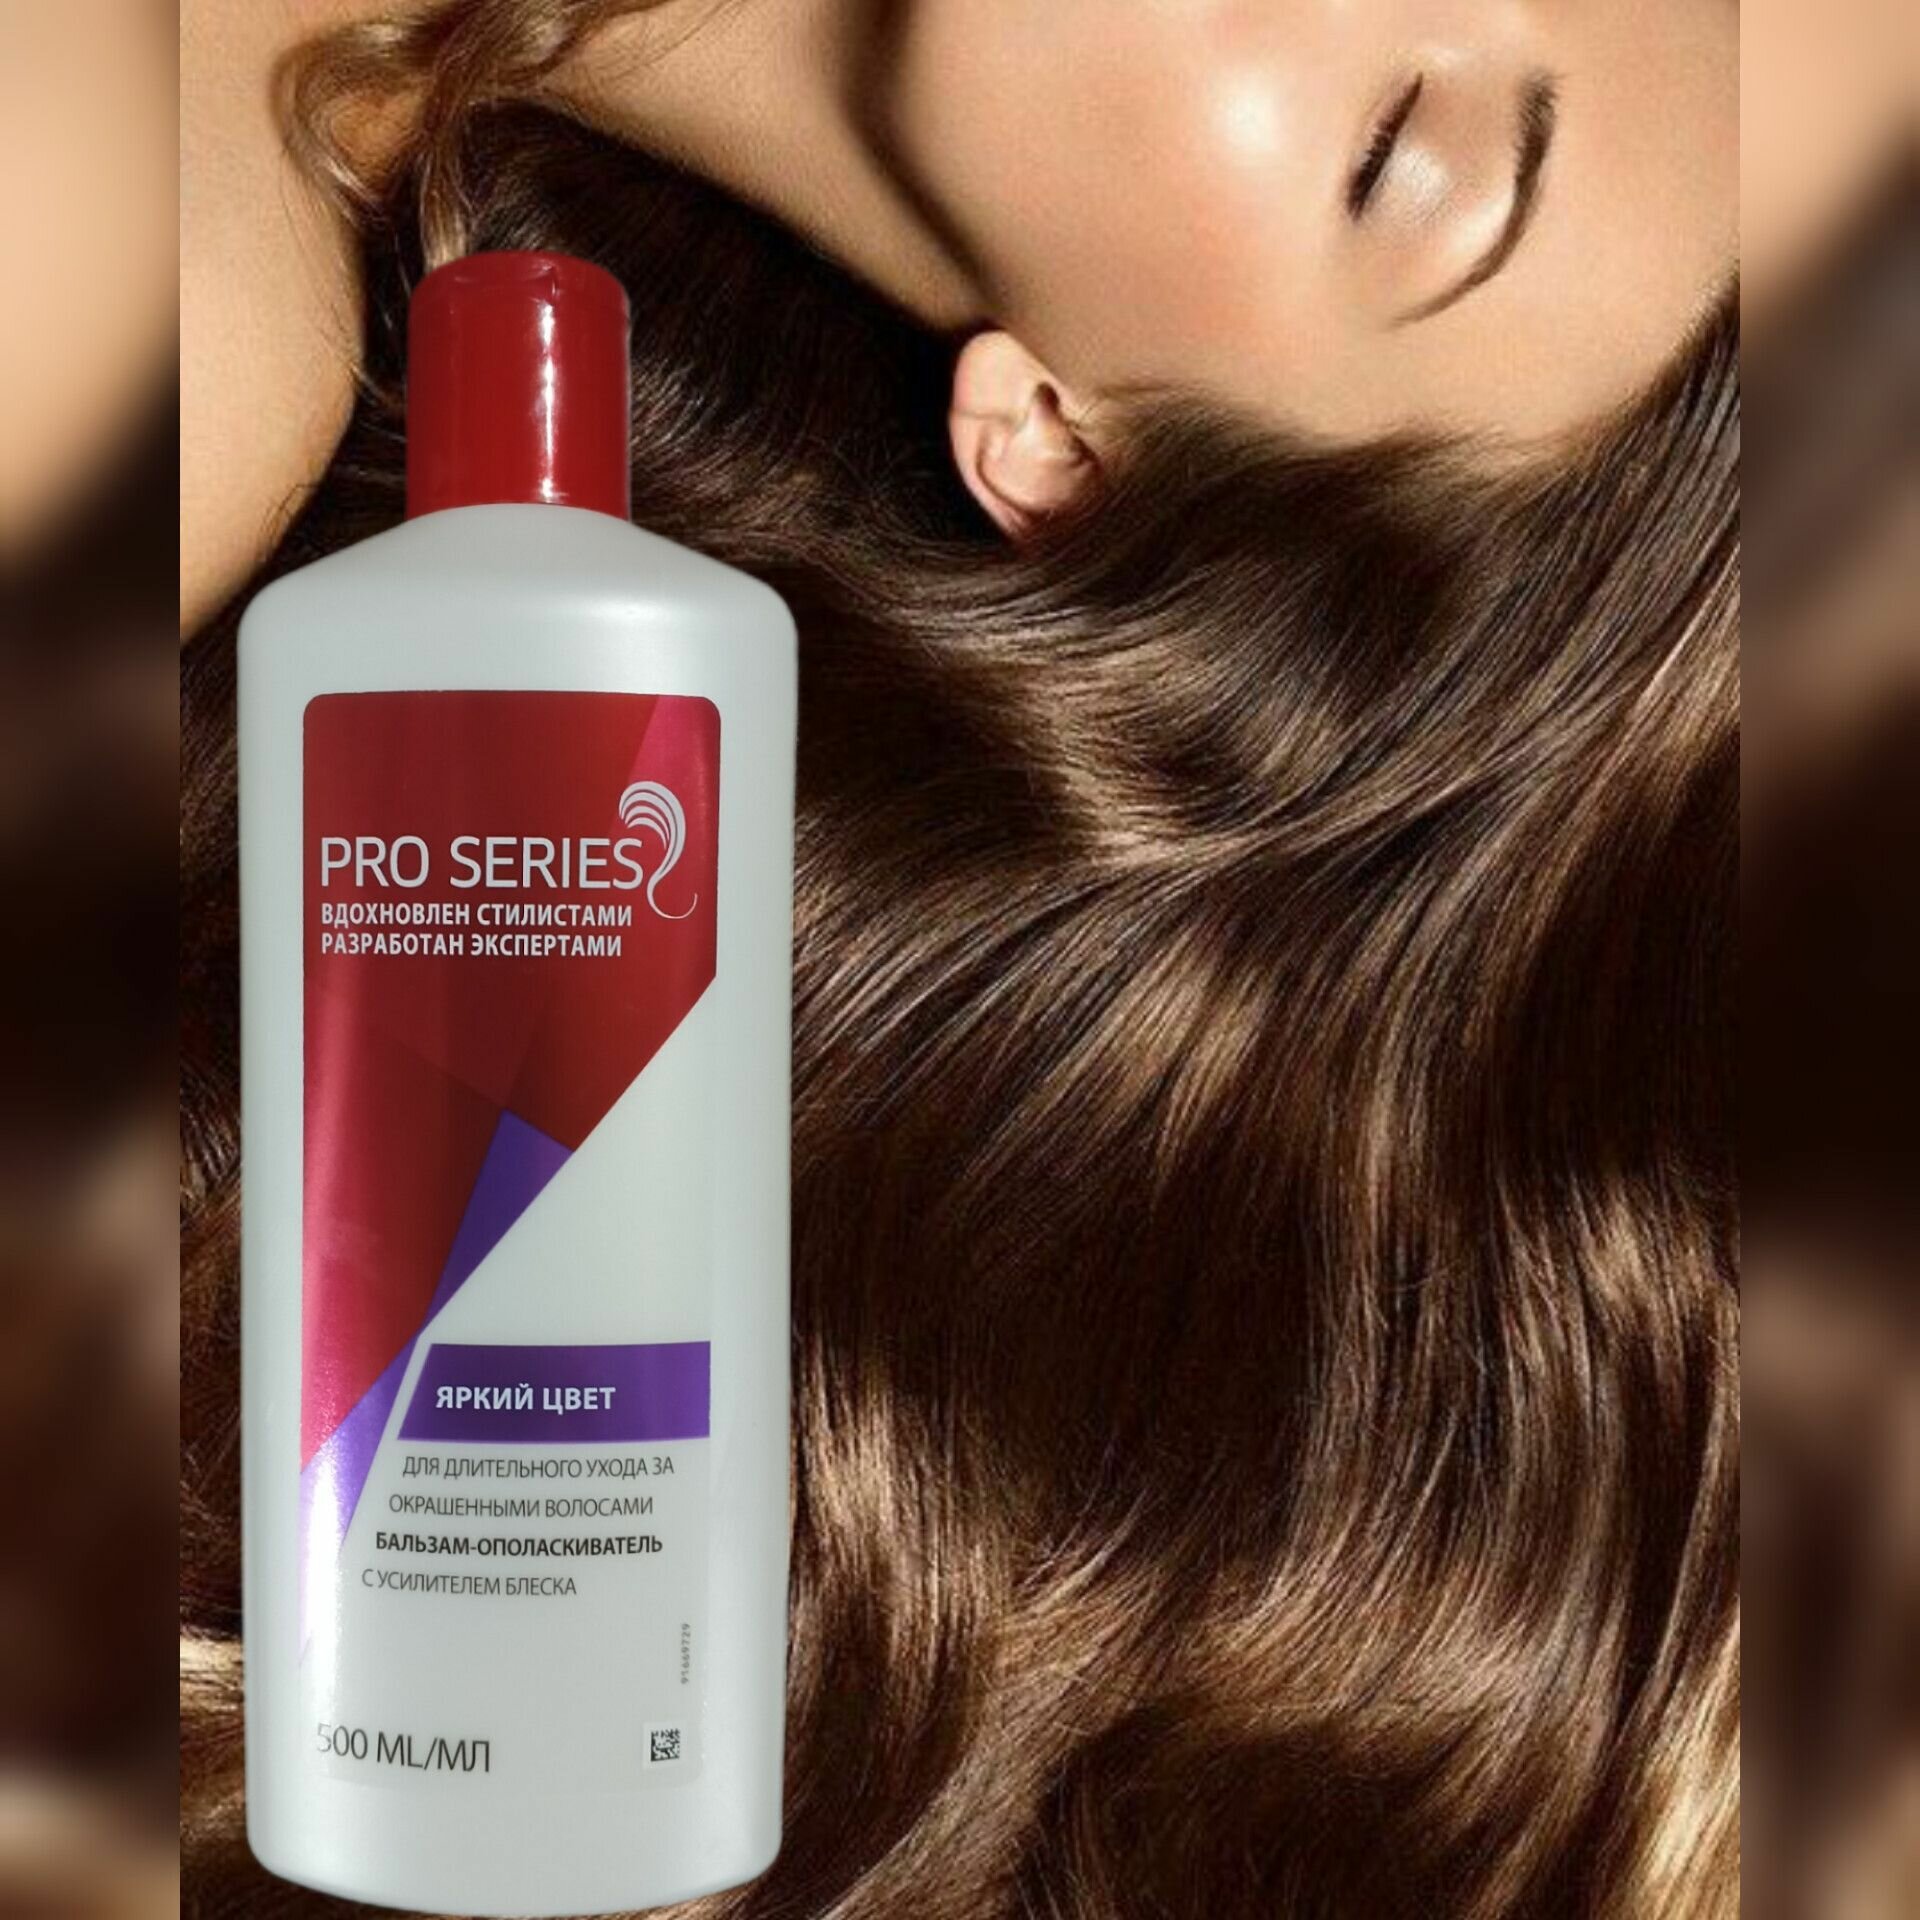 Бальзам-ополаскиватель для длительного ухода за окрашенными волосами PRO SERIES с усилителями блеска яркий цвет, 500 мл